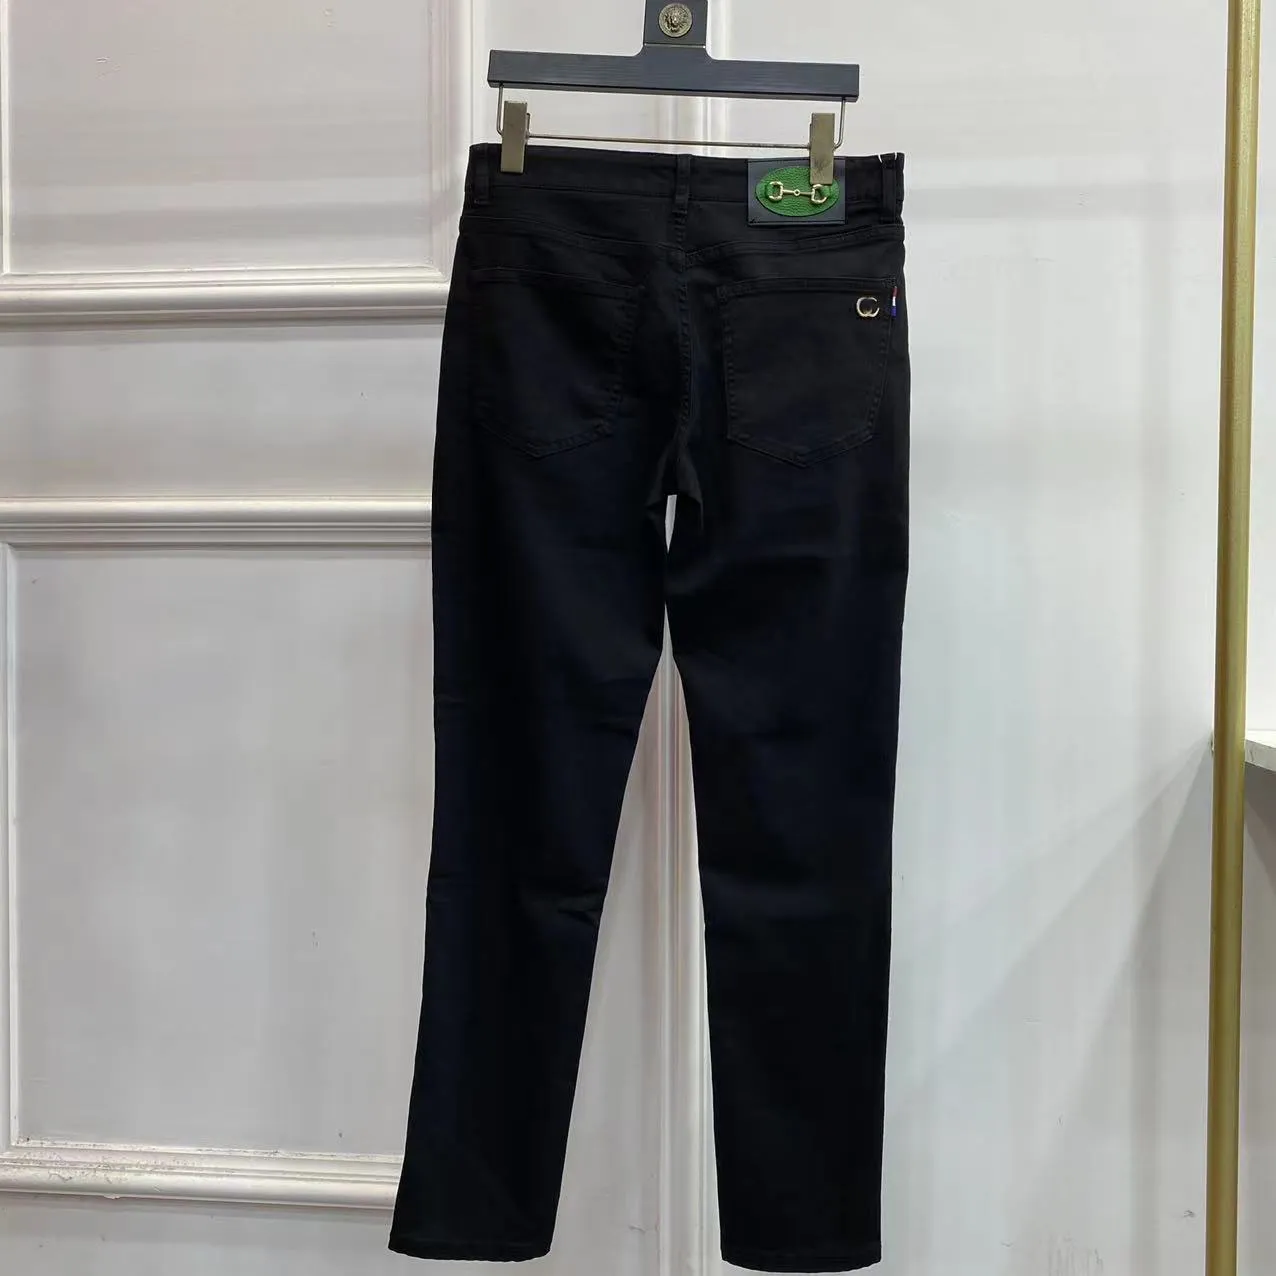 Printemps / été élégant élégant marque de mode haut de gamme lourde artisanat lavé les produits européens lavés élastiques slim small small jambe jeans